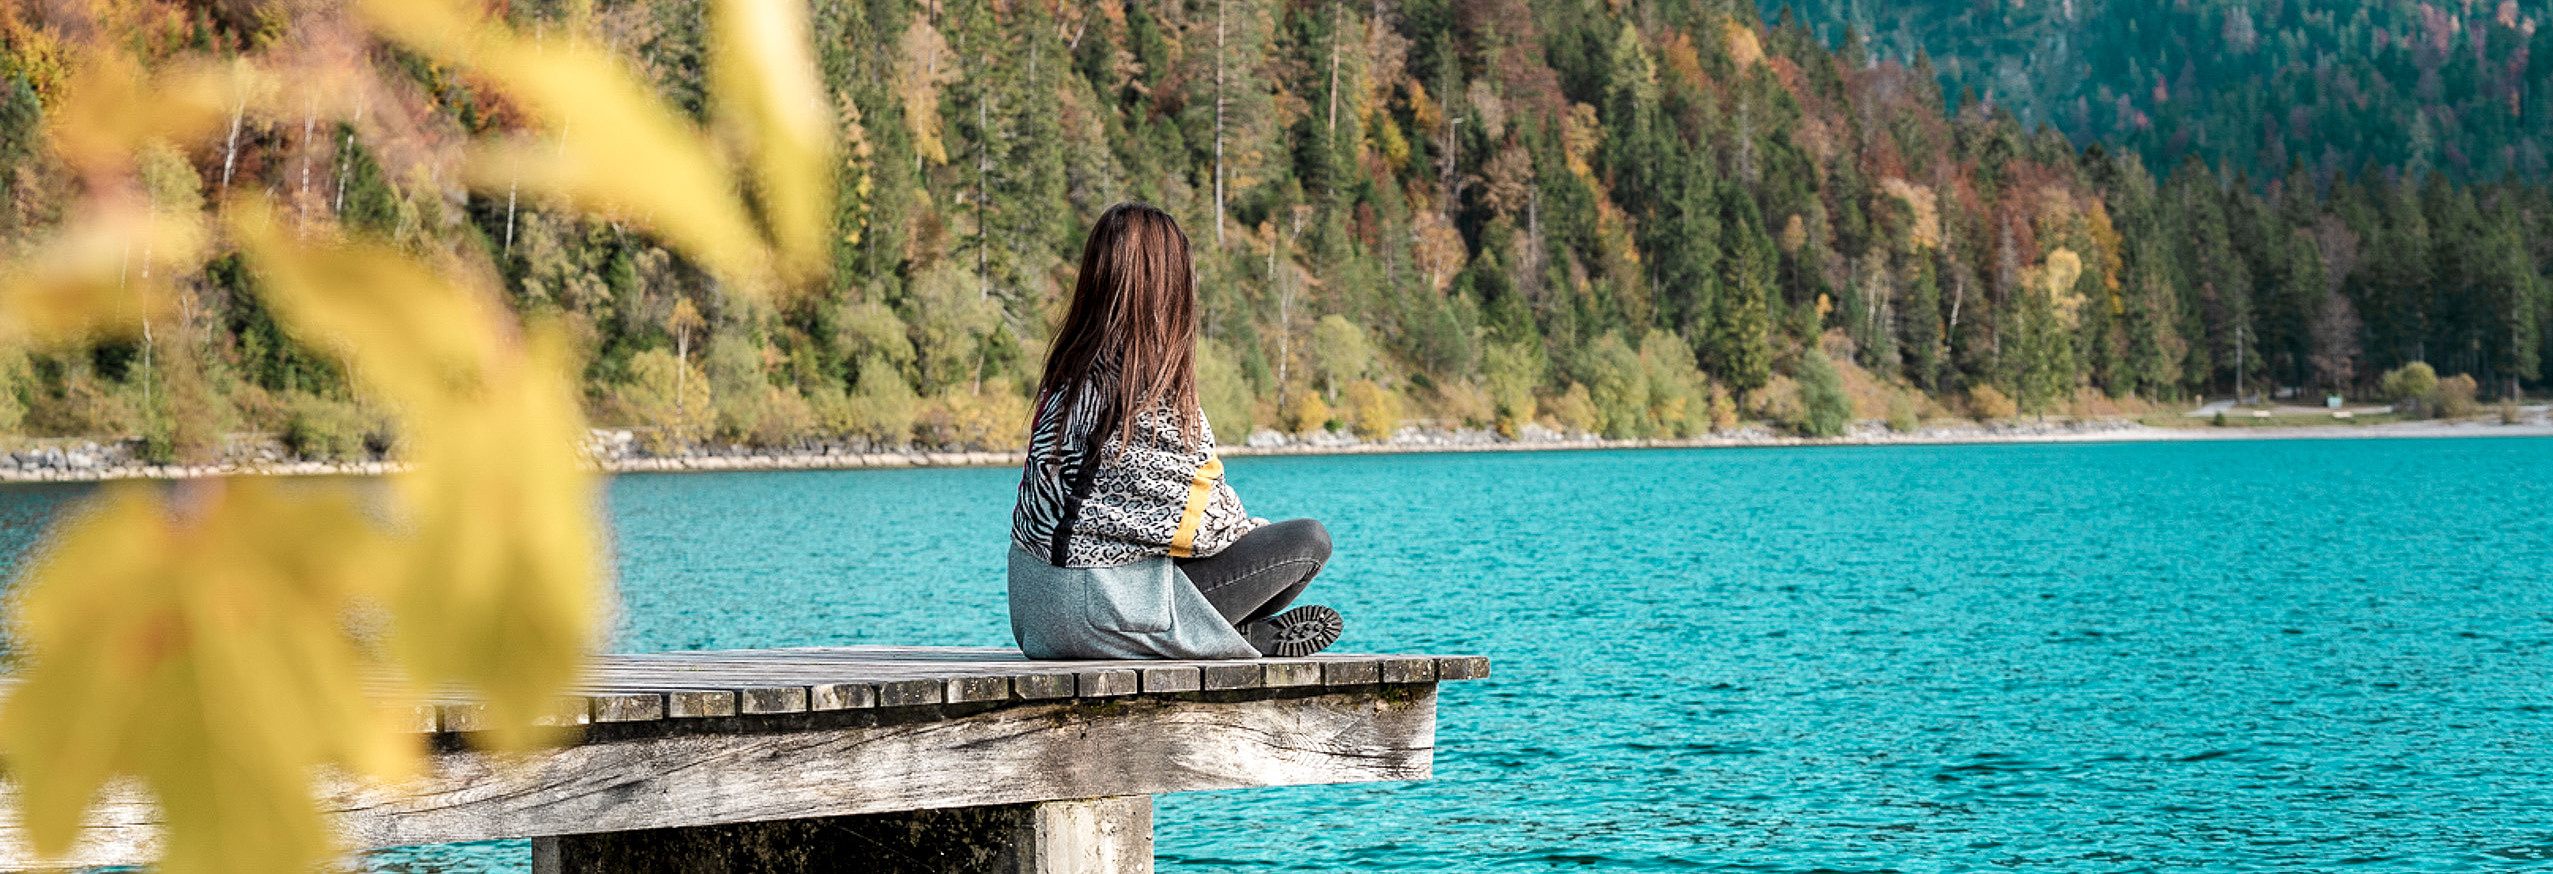 Frau sitzt auf Steg am Seeufer